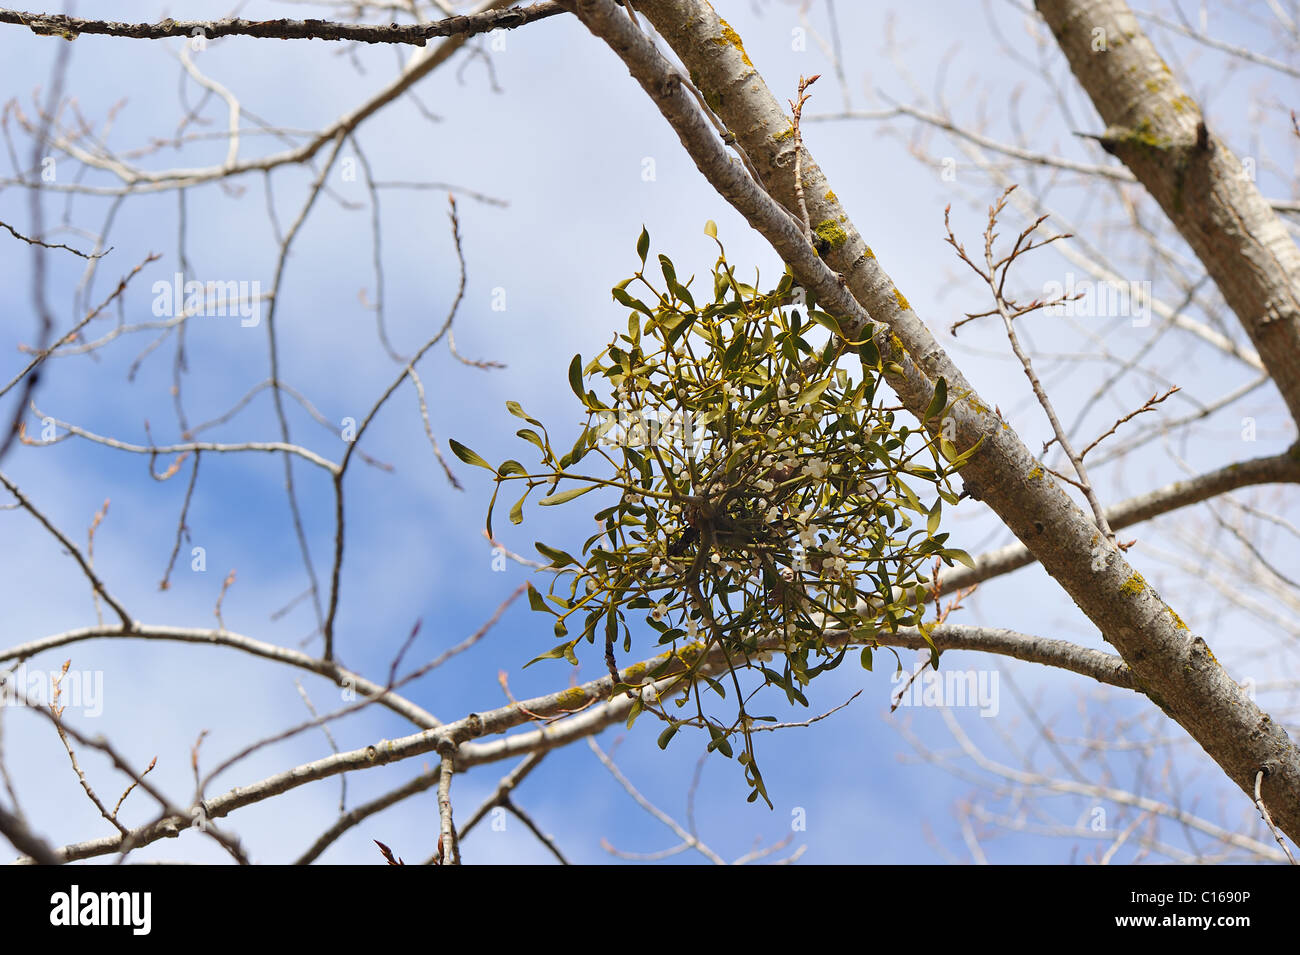 Europäische Mistel (Viscum Album) Hemi-parasitäre Strauch wächst auf Zweigen von einer Pappel im Winter - Vaucluse - Provence - Frankreich Stockfoto